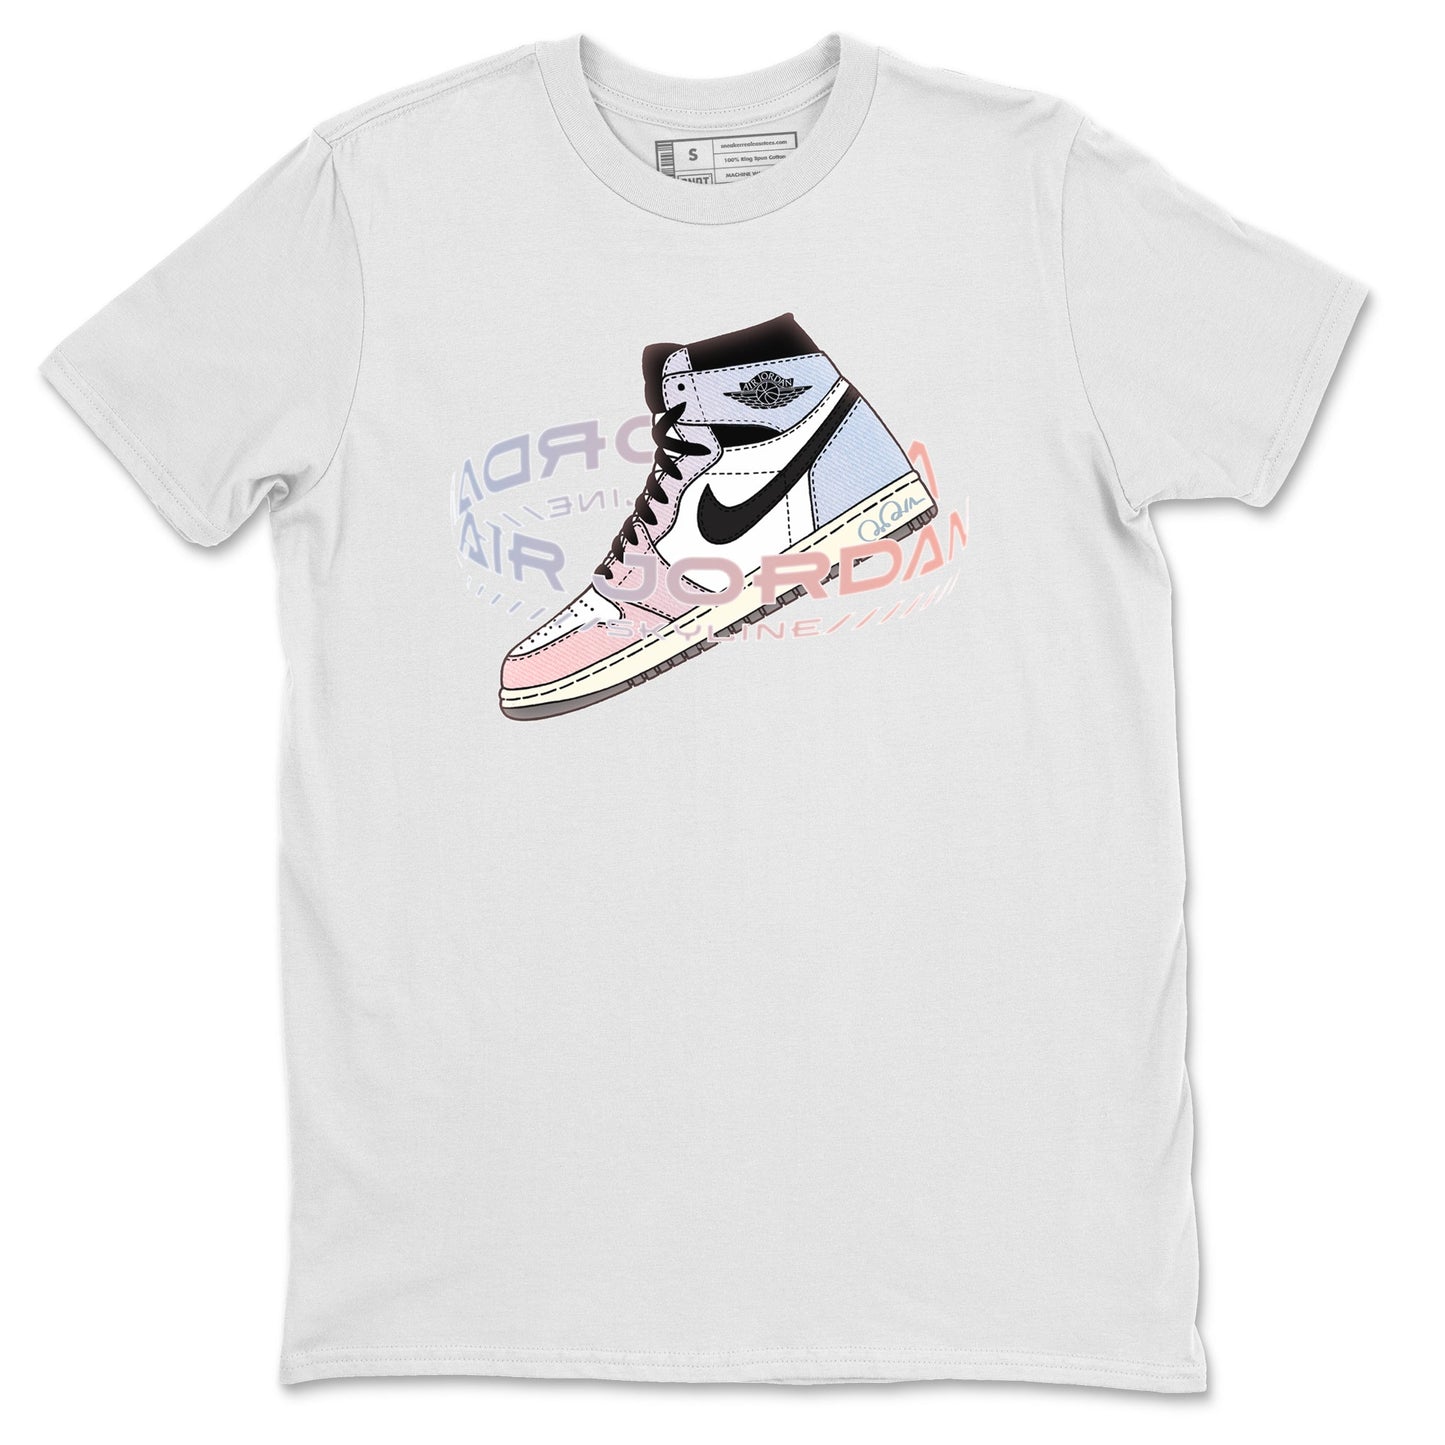 Air Jordan 1 Skyline Sneaker Tees Drip Gear Zone Warping Space Sneaker Tees AJ1 Skyline Shirt Unisex Shirts White 2